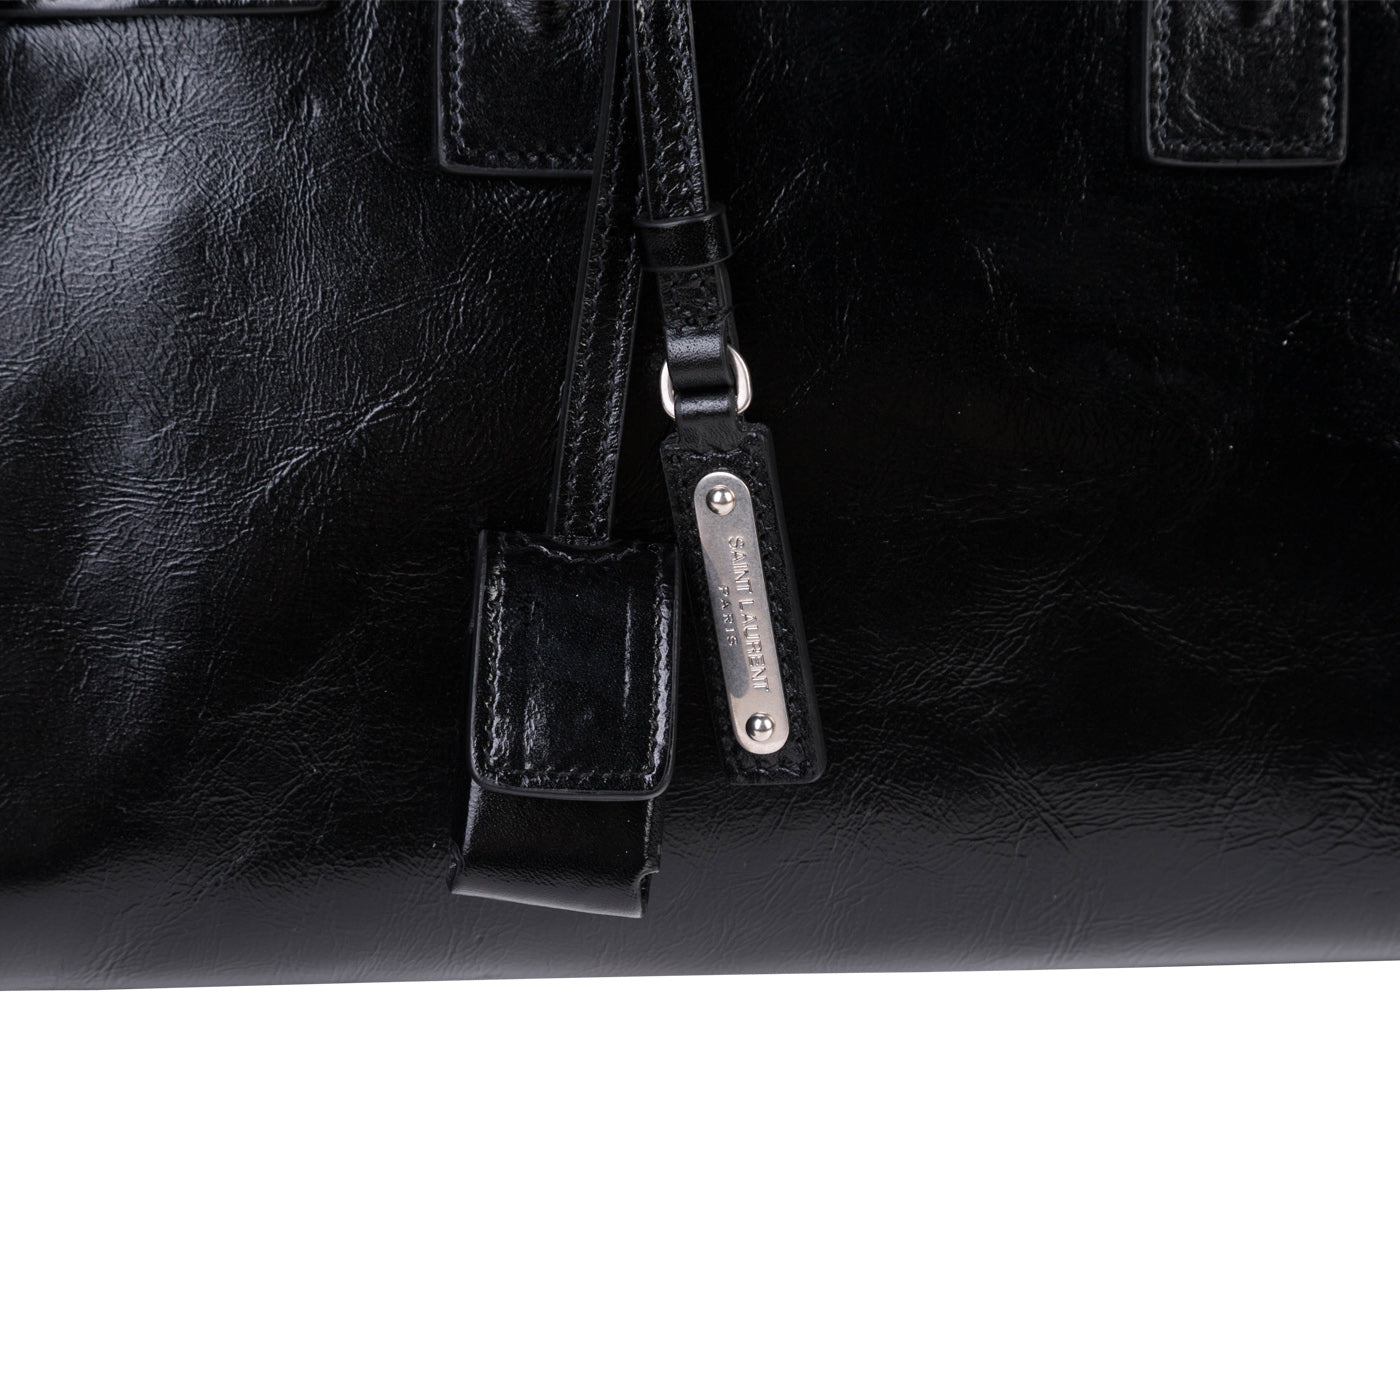 Yves Saint Laurent Black Moroder Leather Baby Sac De Jour Souple Duffle Bag  - Yoogi's Closet